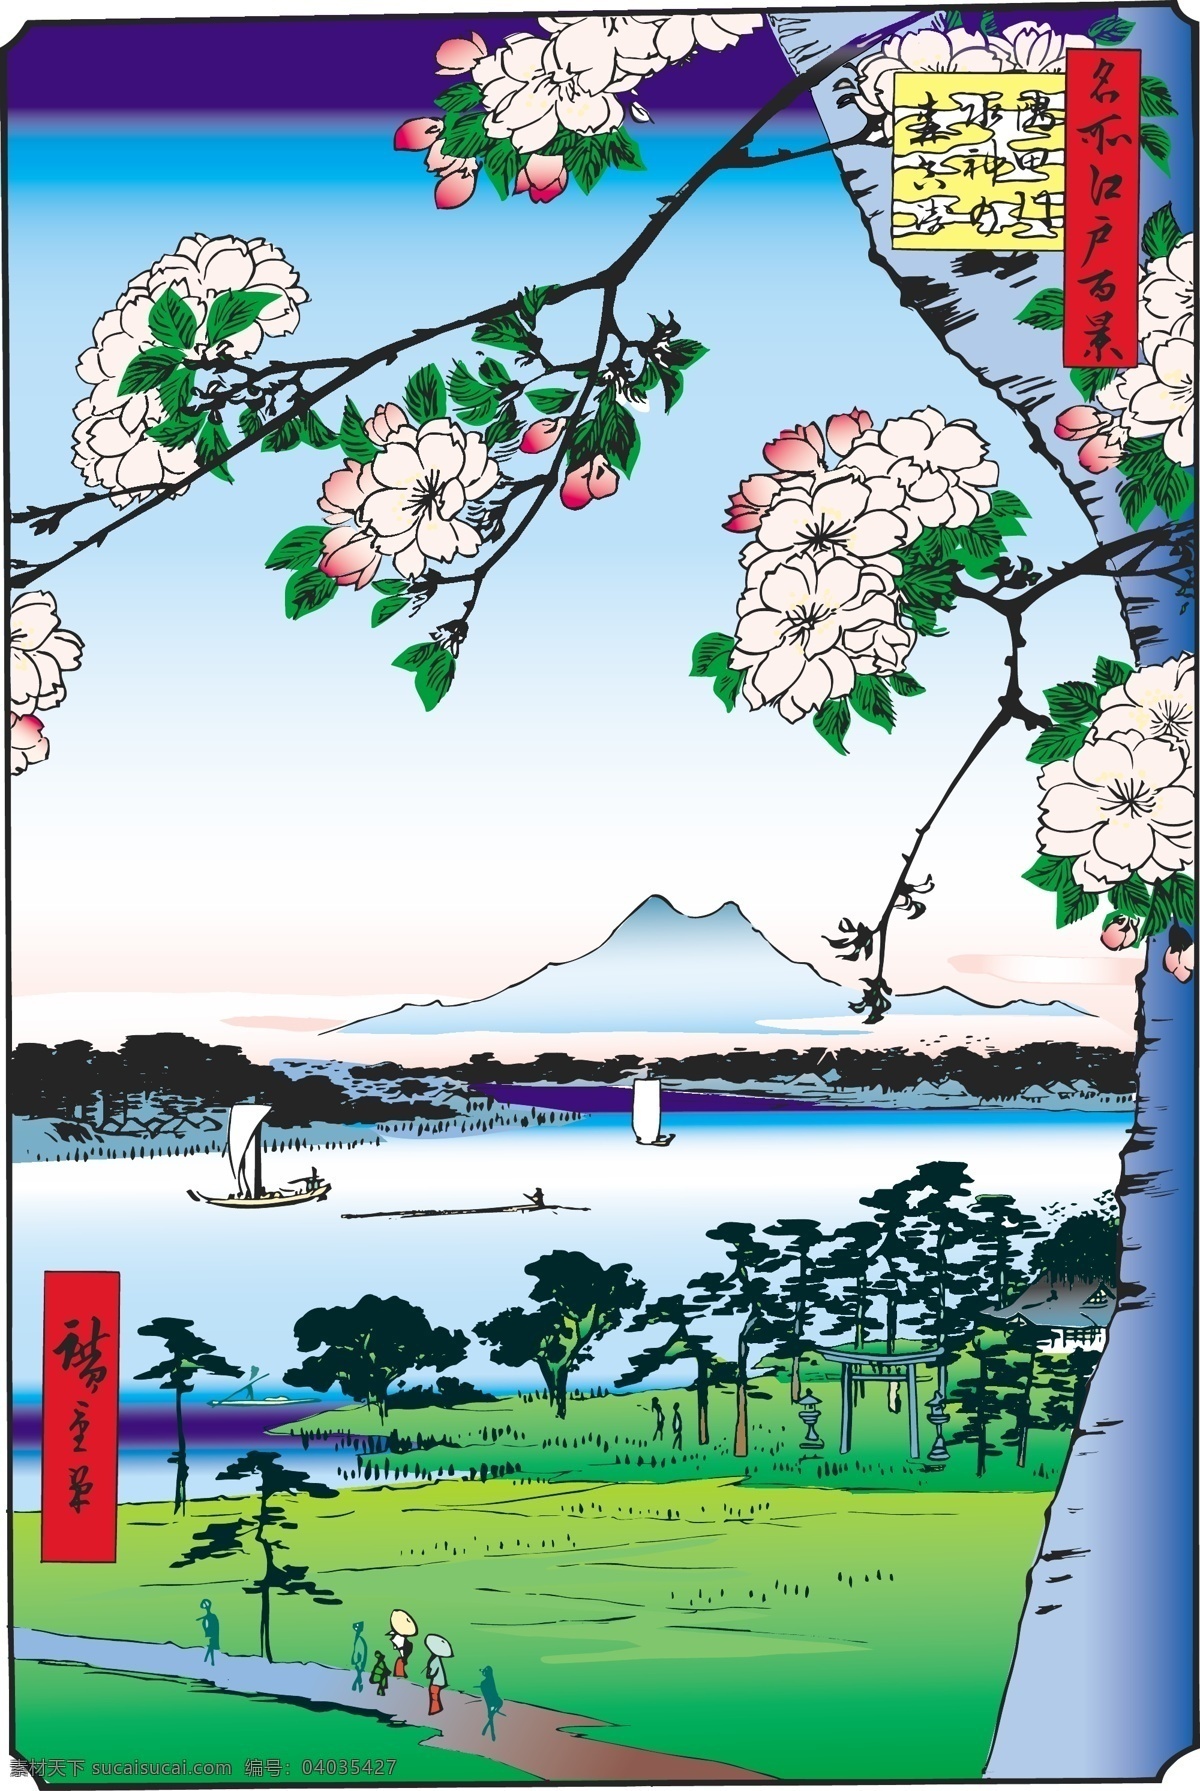 日本 浮 仕 绘 彩绘 风景 人物 浮仕绘 文化艺术 美术绘画 浮世绘 精品 矢量图 矢量图库